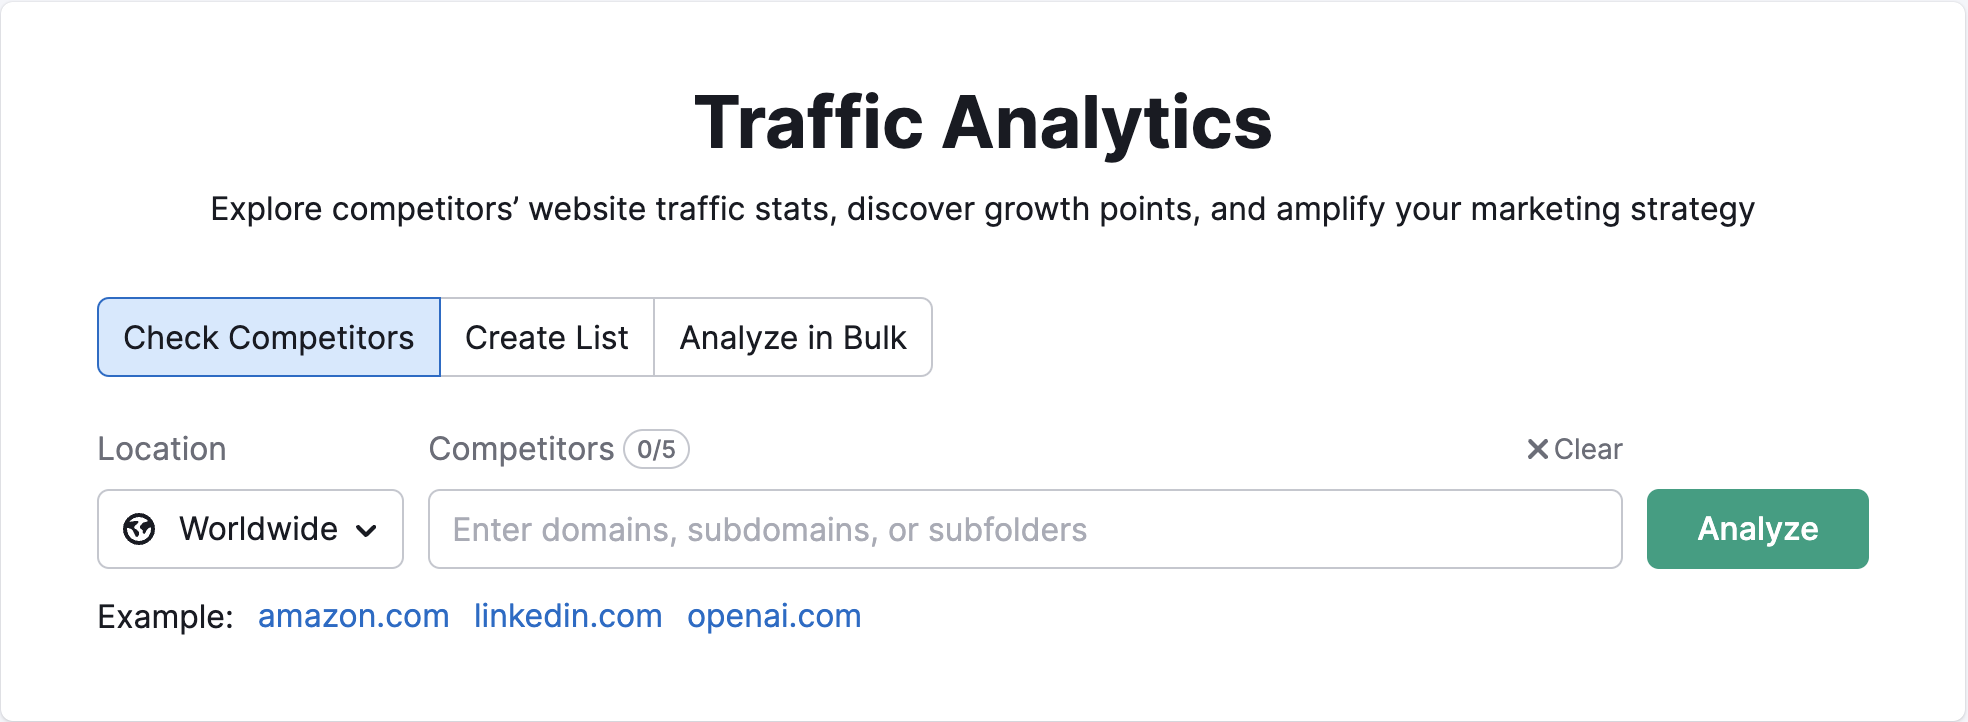 Página inicial do Traffic Analytics na Semrush. Mostrando onde digitar o domínio do concorrente e selecionar o local. 